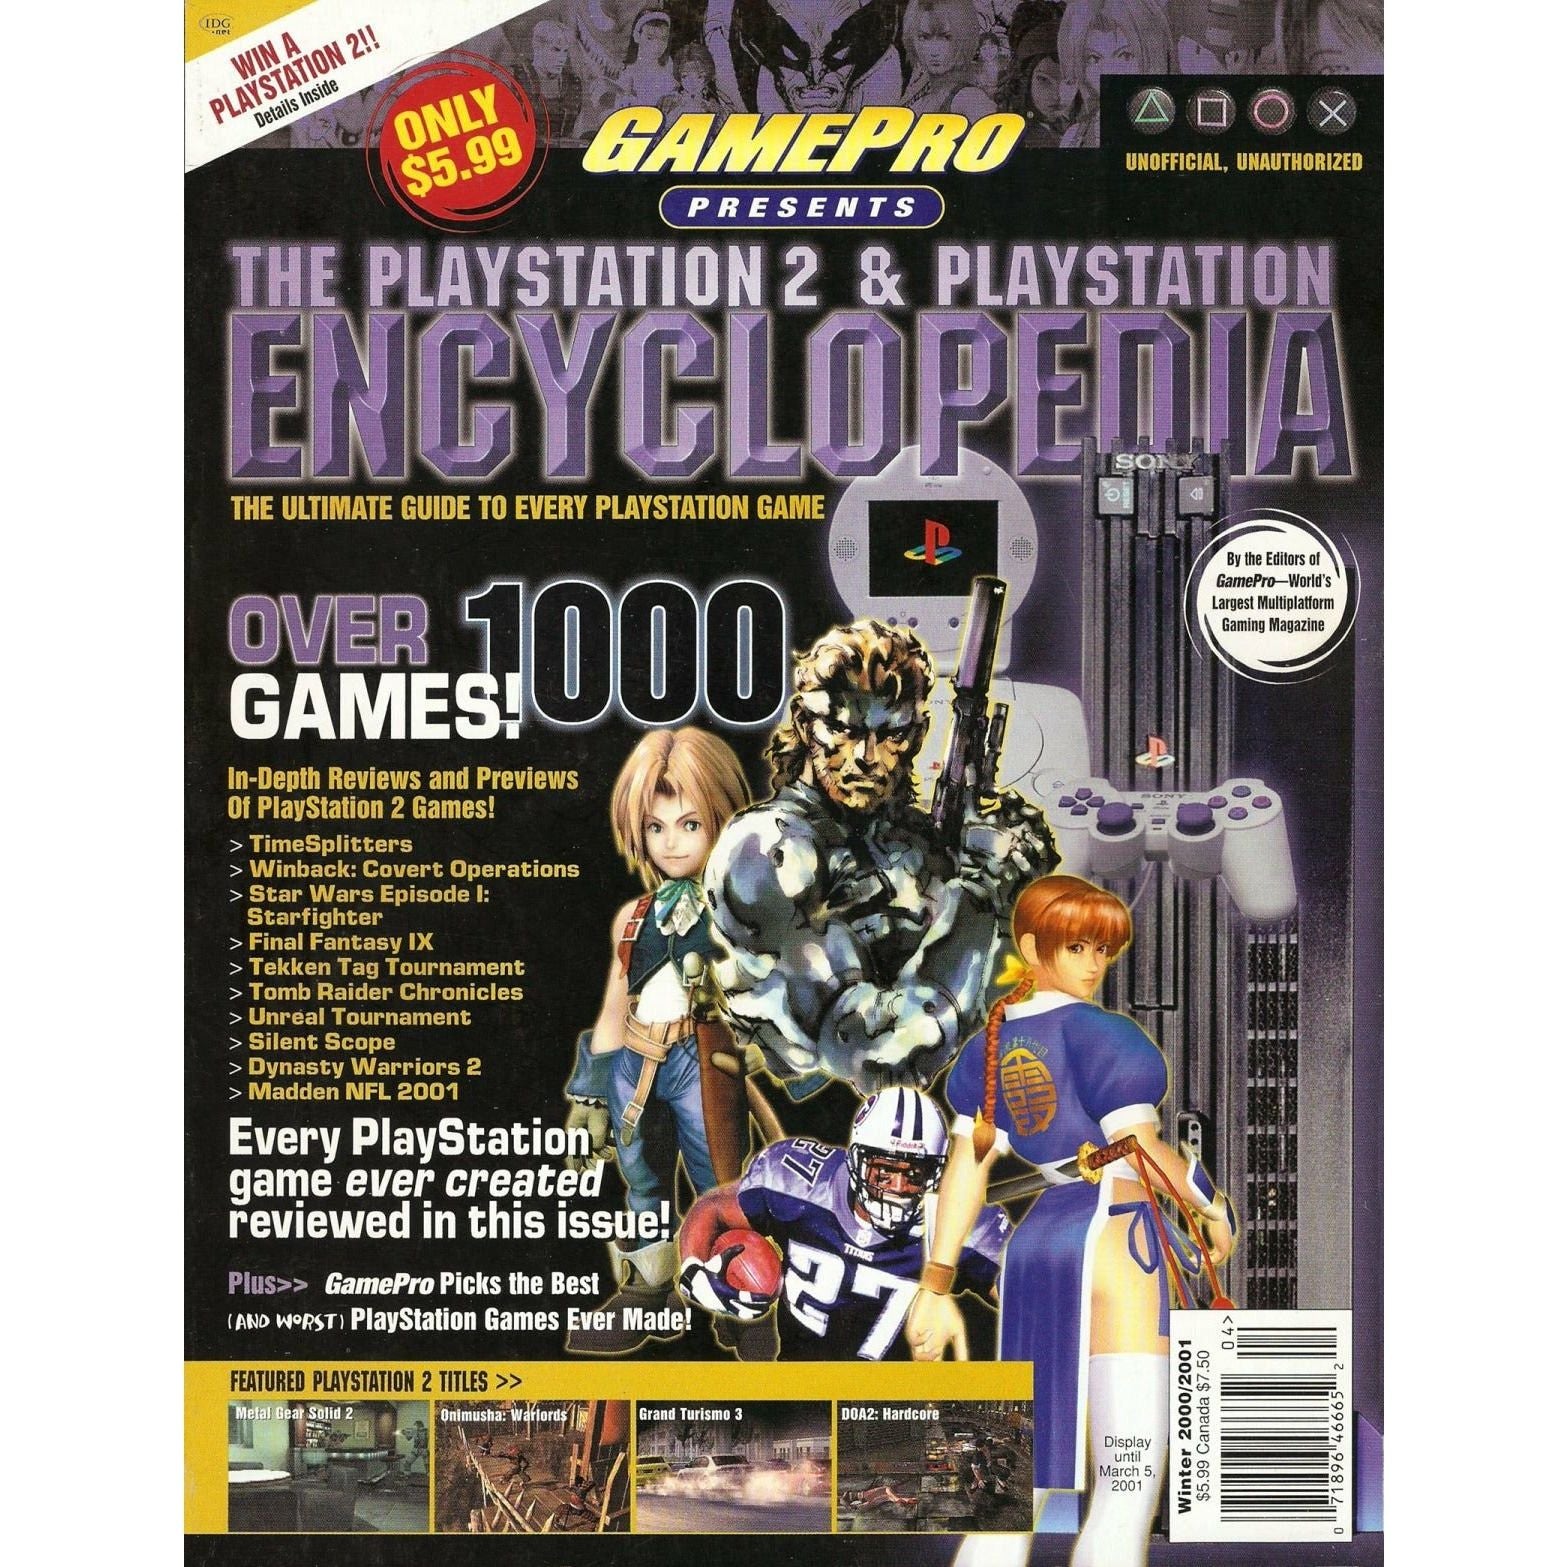 The Playstation 2 & Playstation Encyclopedia